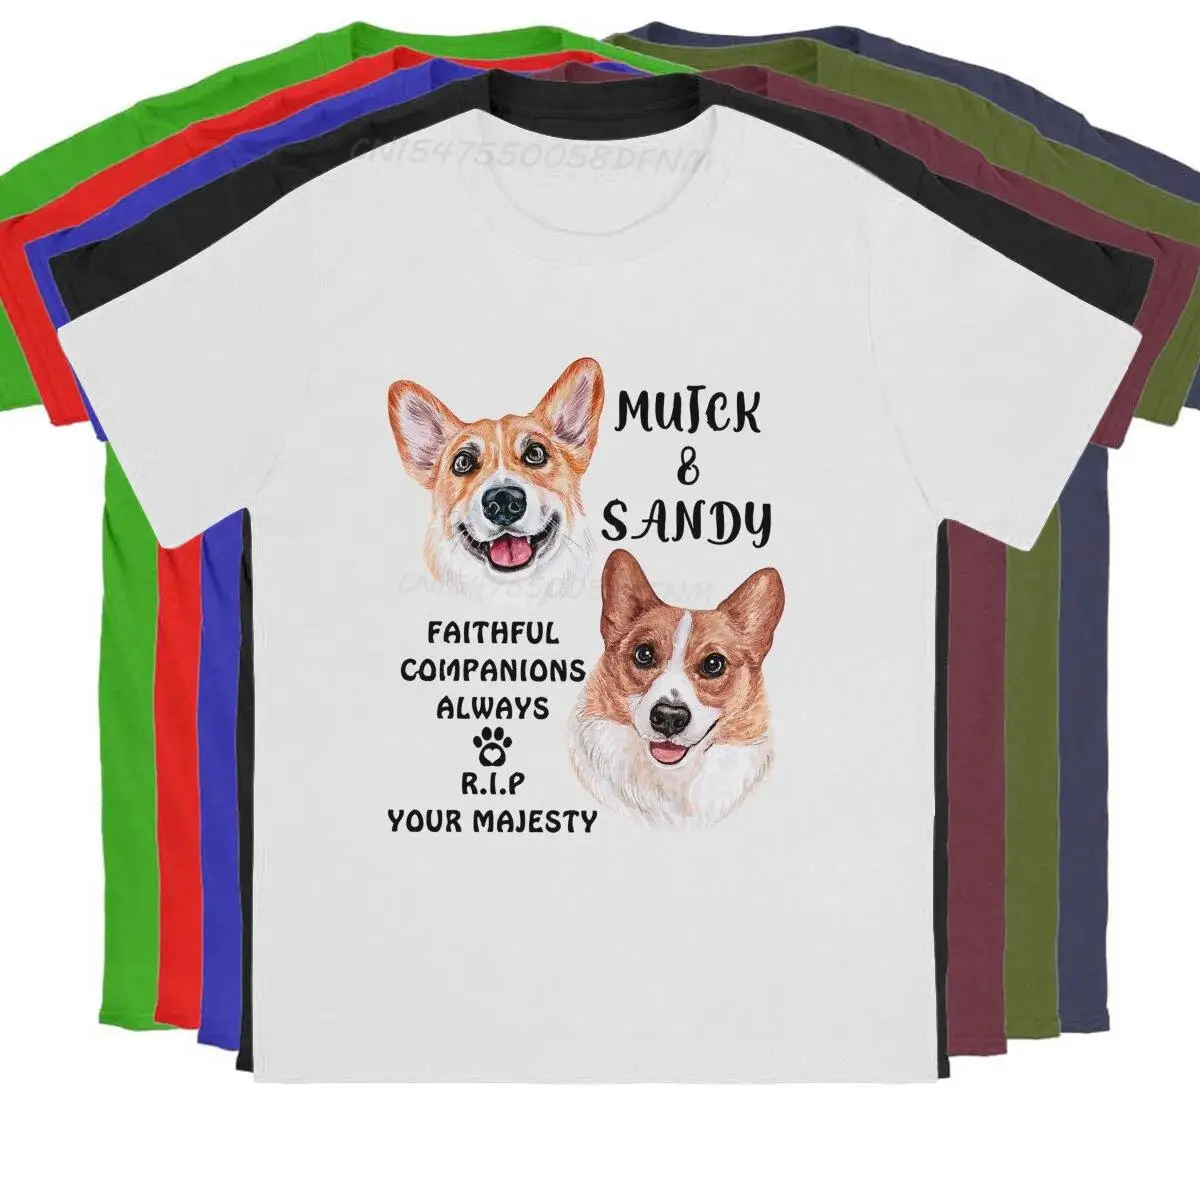 

Мужская футболка с рисунком королевы корги муика и песчаных собак королевы Елизаветы мужские футболки хипстерские Топы королевы корги Мужская графическая футболка